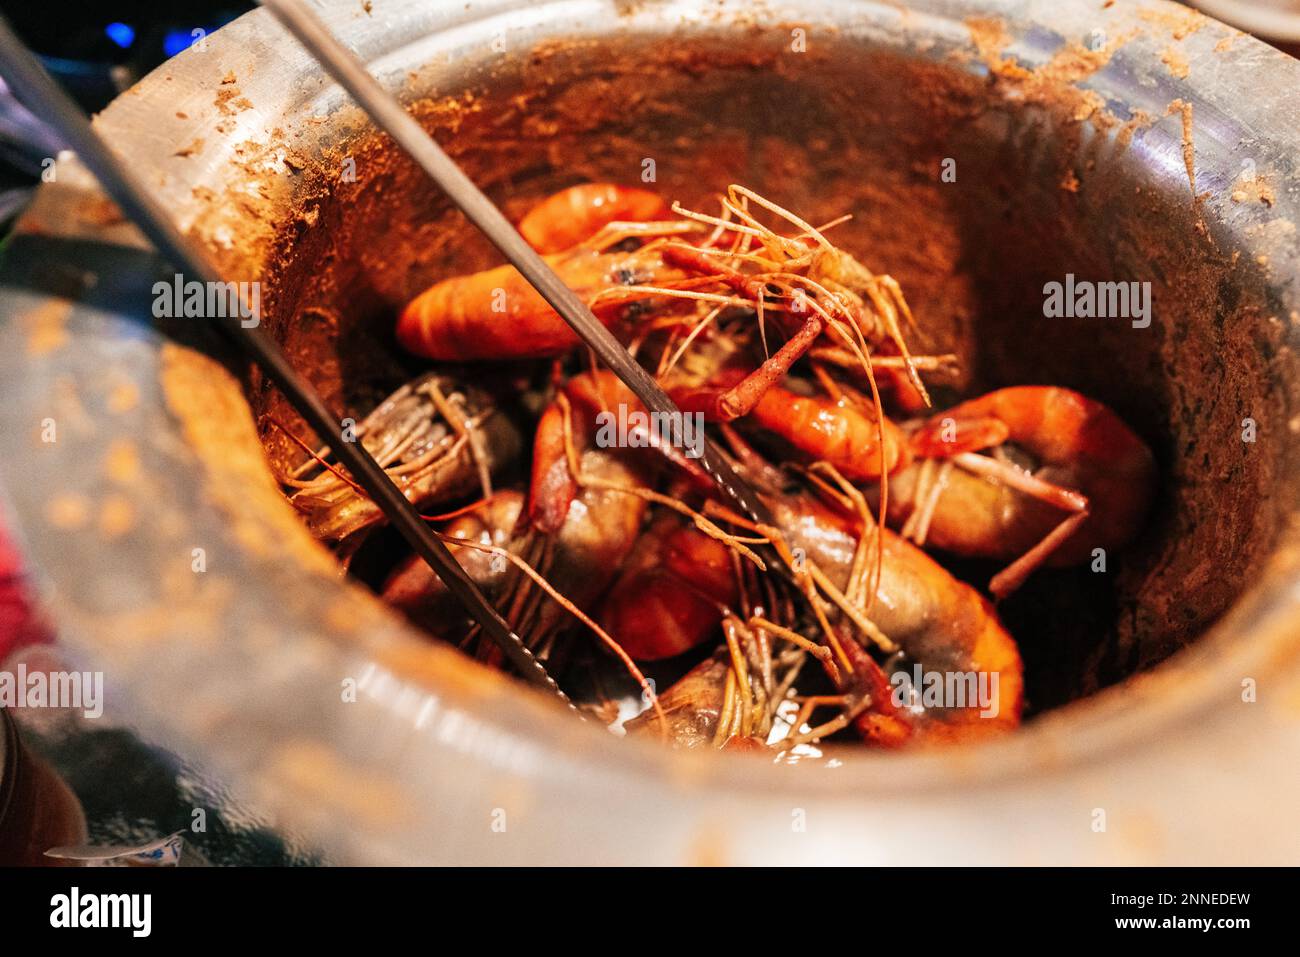 Scharfe Taiwanesische Pfeffergarnelen. Salz und Pfeffer Shrimps stammen aus der kantonesischen Küche und sind ein klassisches Gericht, das viele lieben. Stockfoto